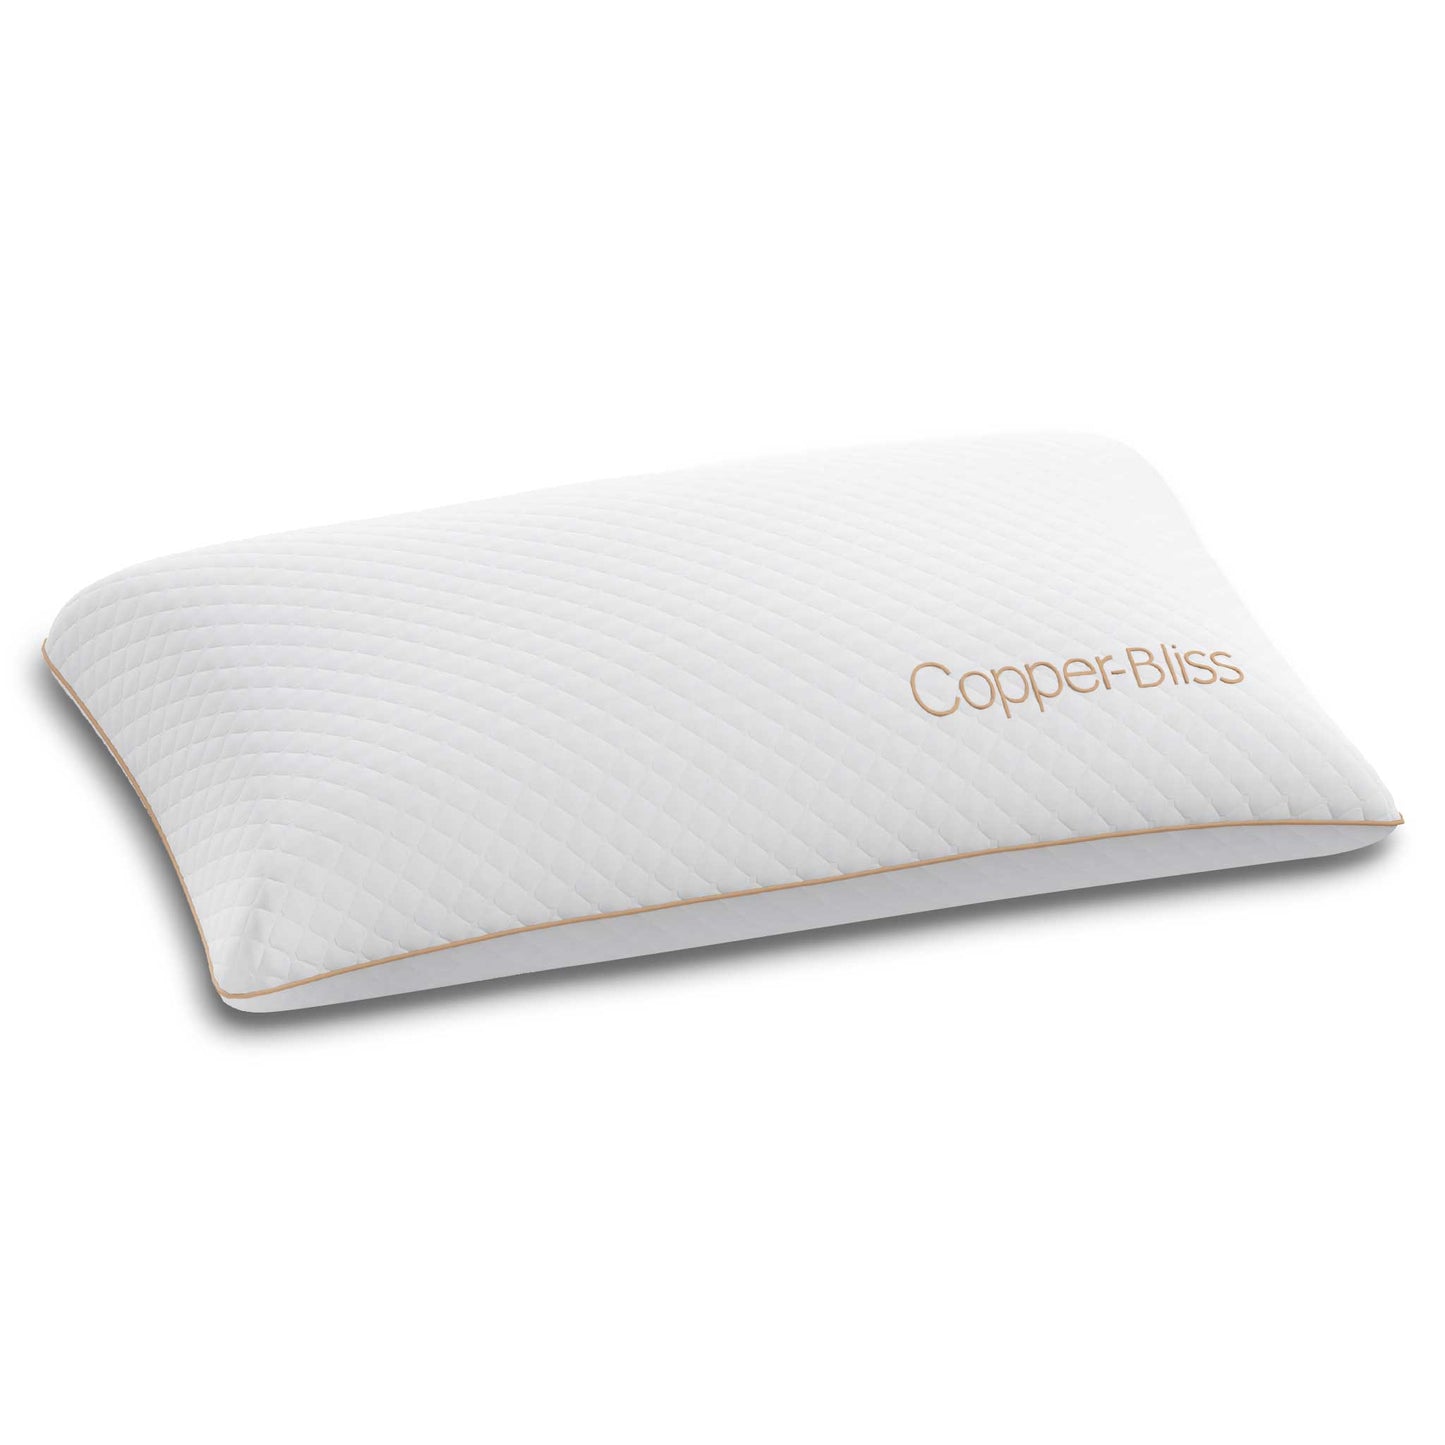 Copper Bliss Pillow